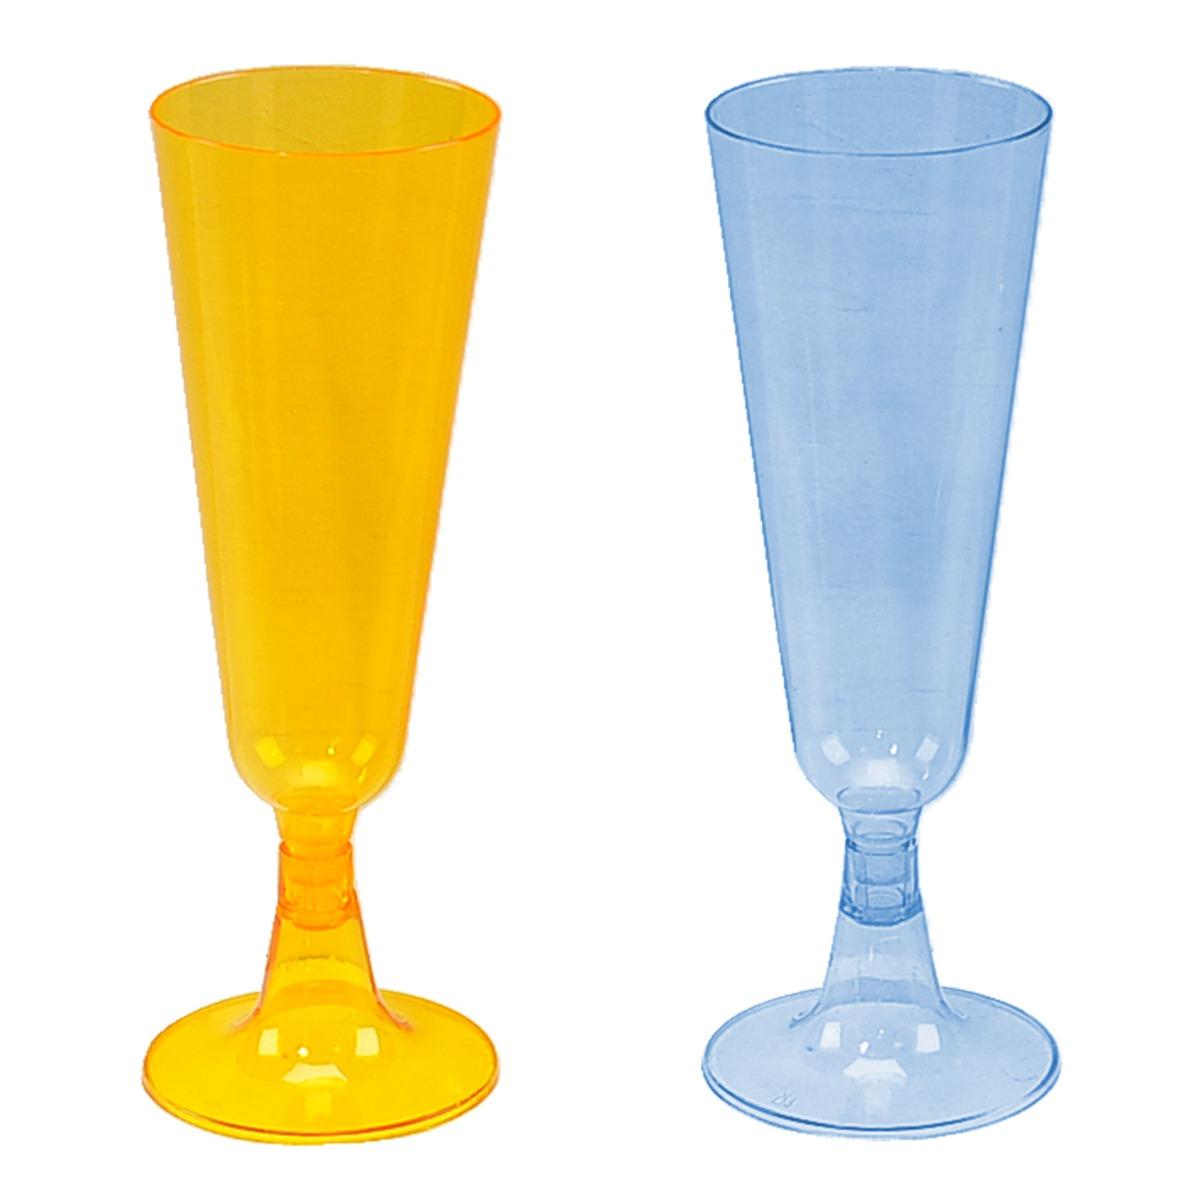 Bicchiere PVC Cristal Flute set 6 Pezzi 2 Colori